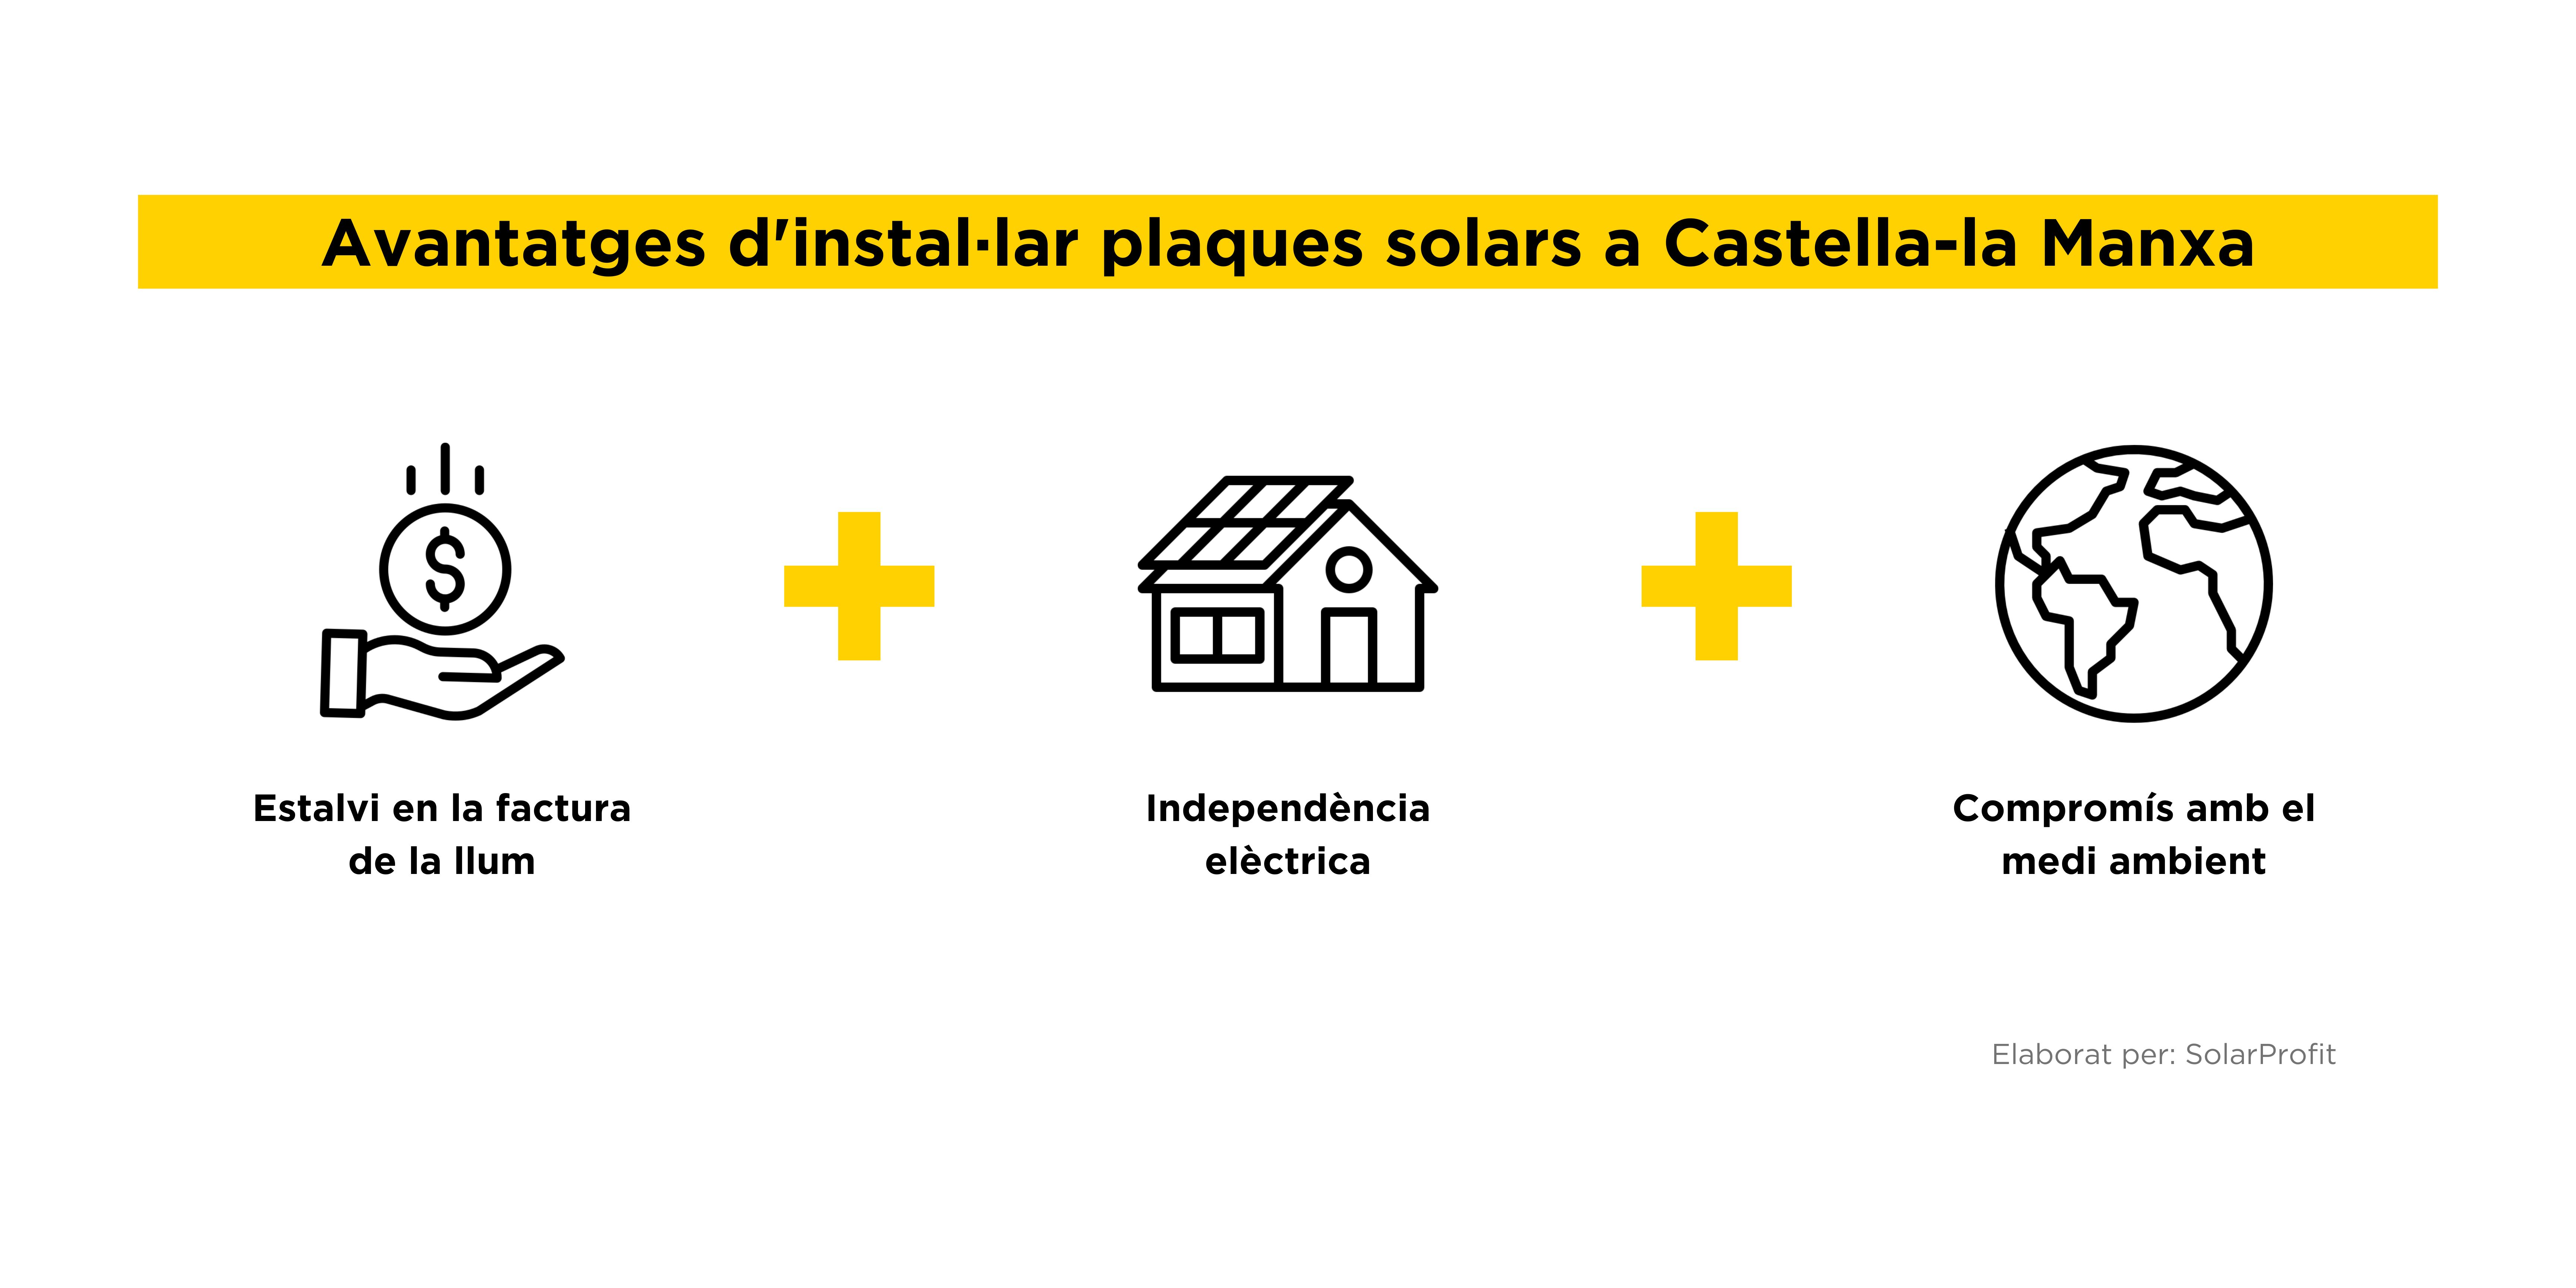 Avantatges plaques solars Castella-la manxa